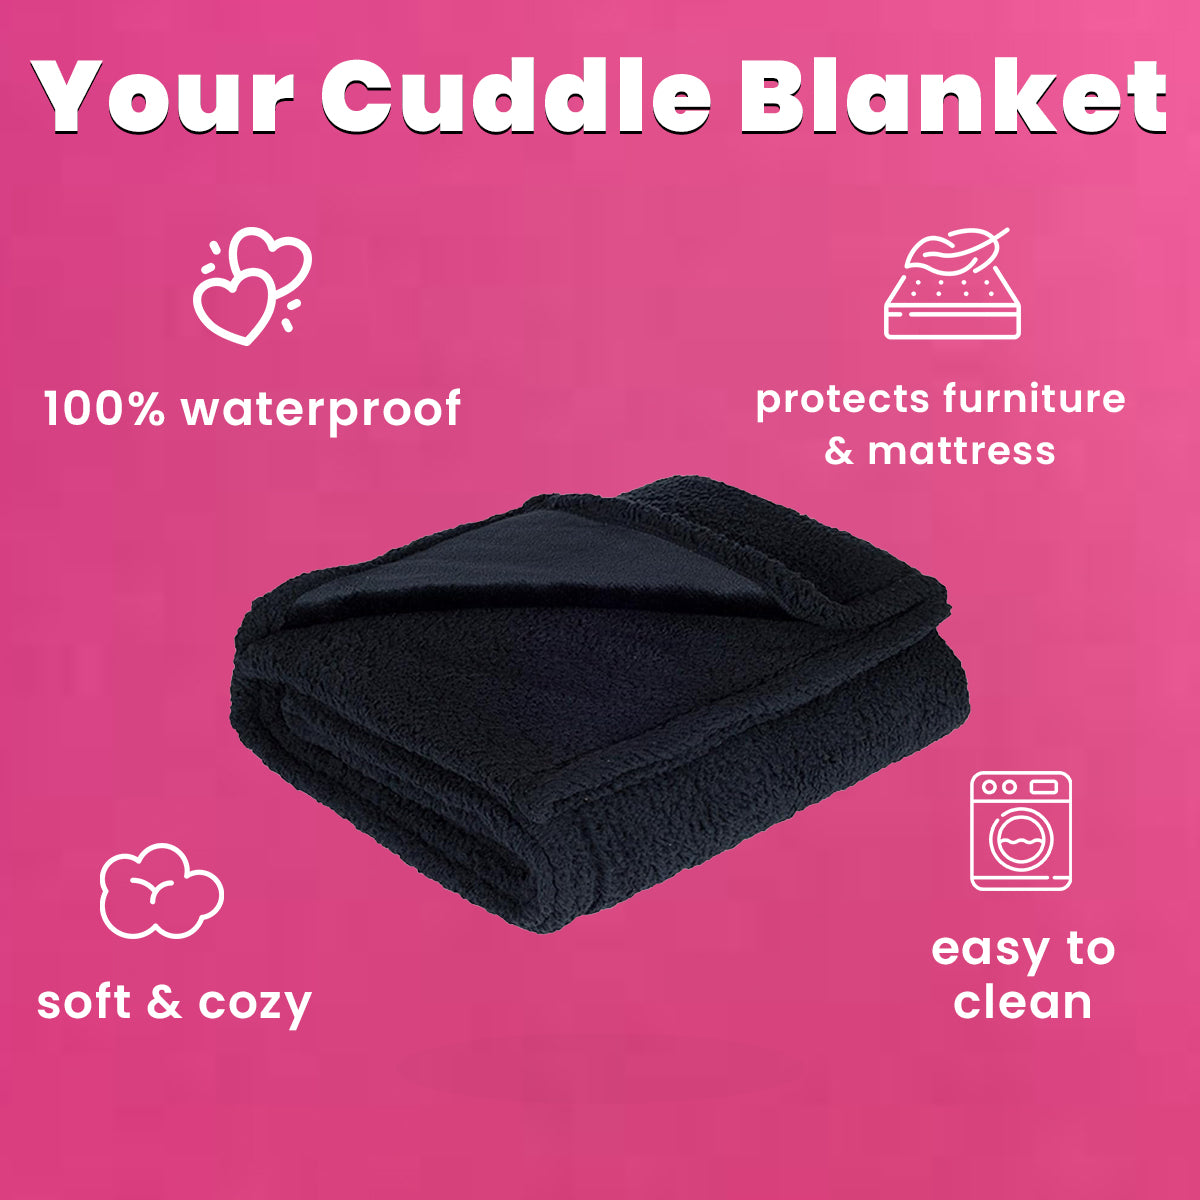 Sweevly - The Waterproof Cuddle Blanket